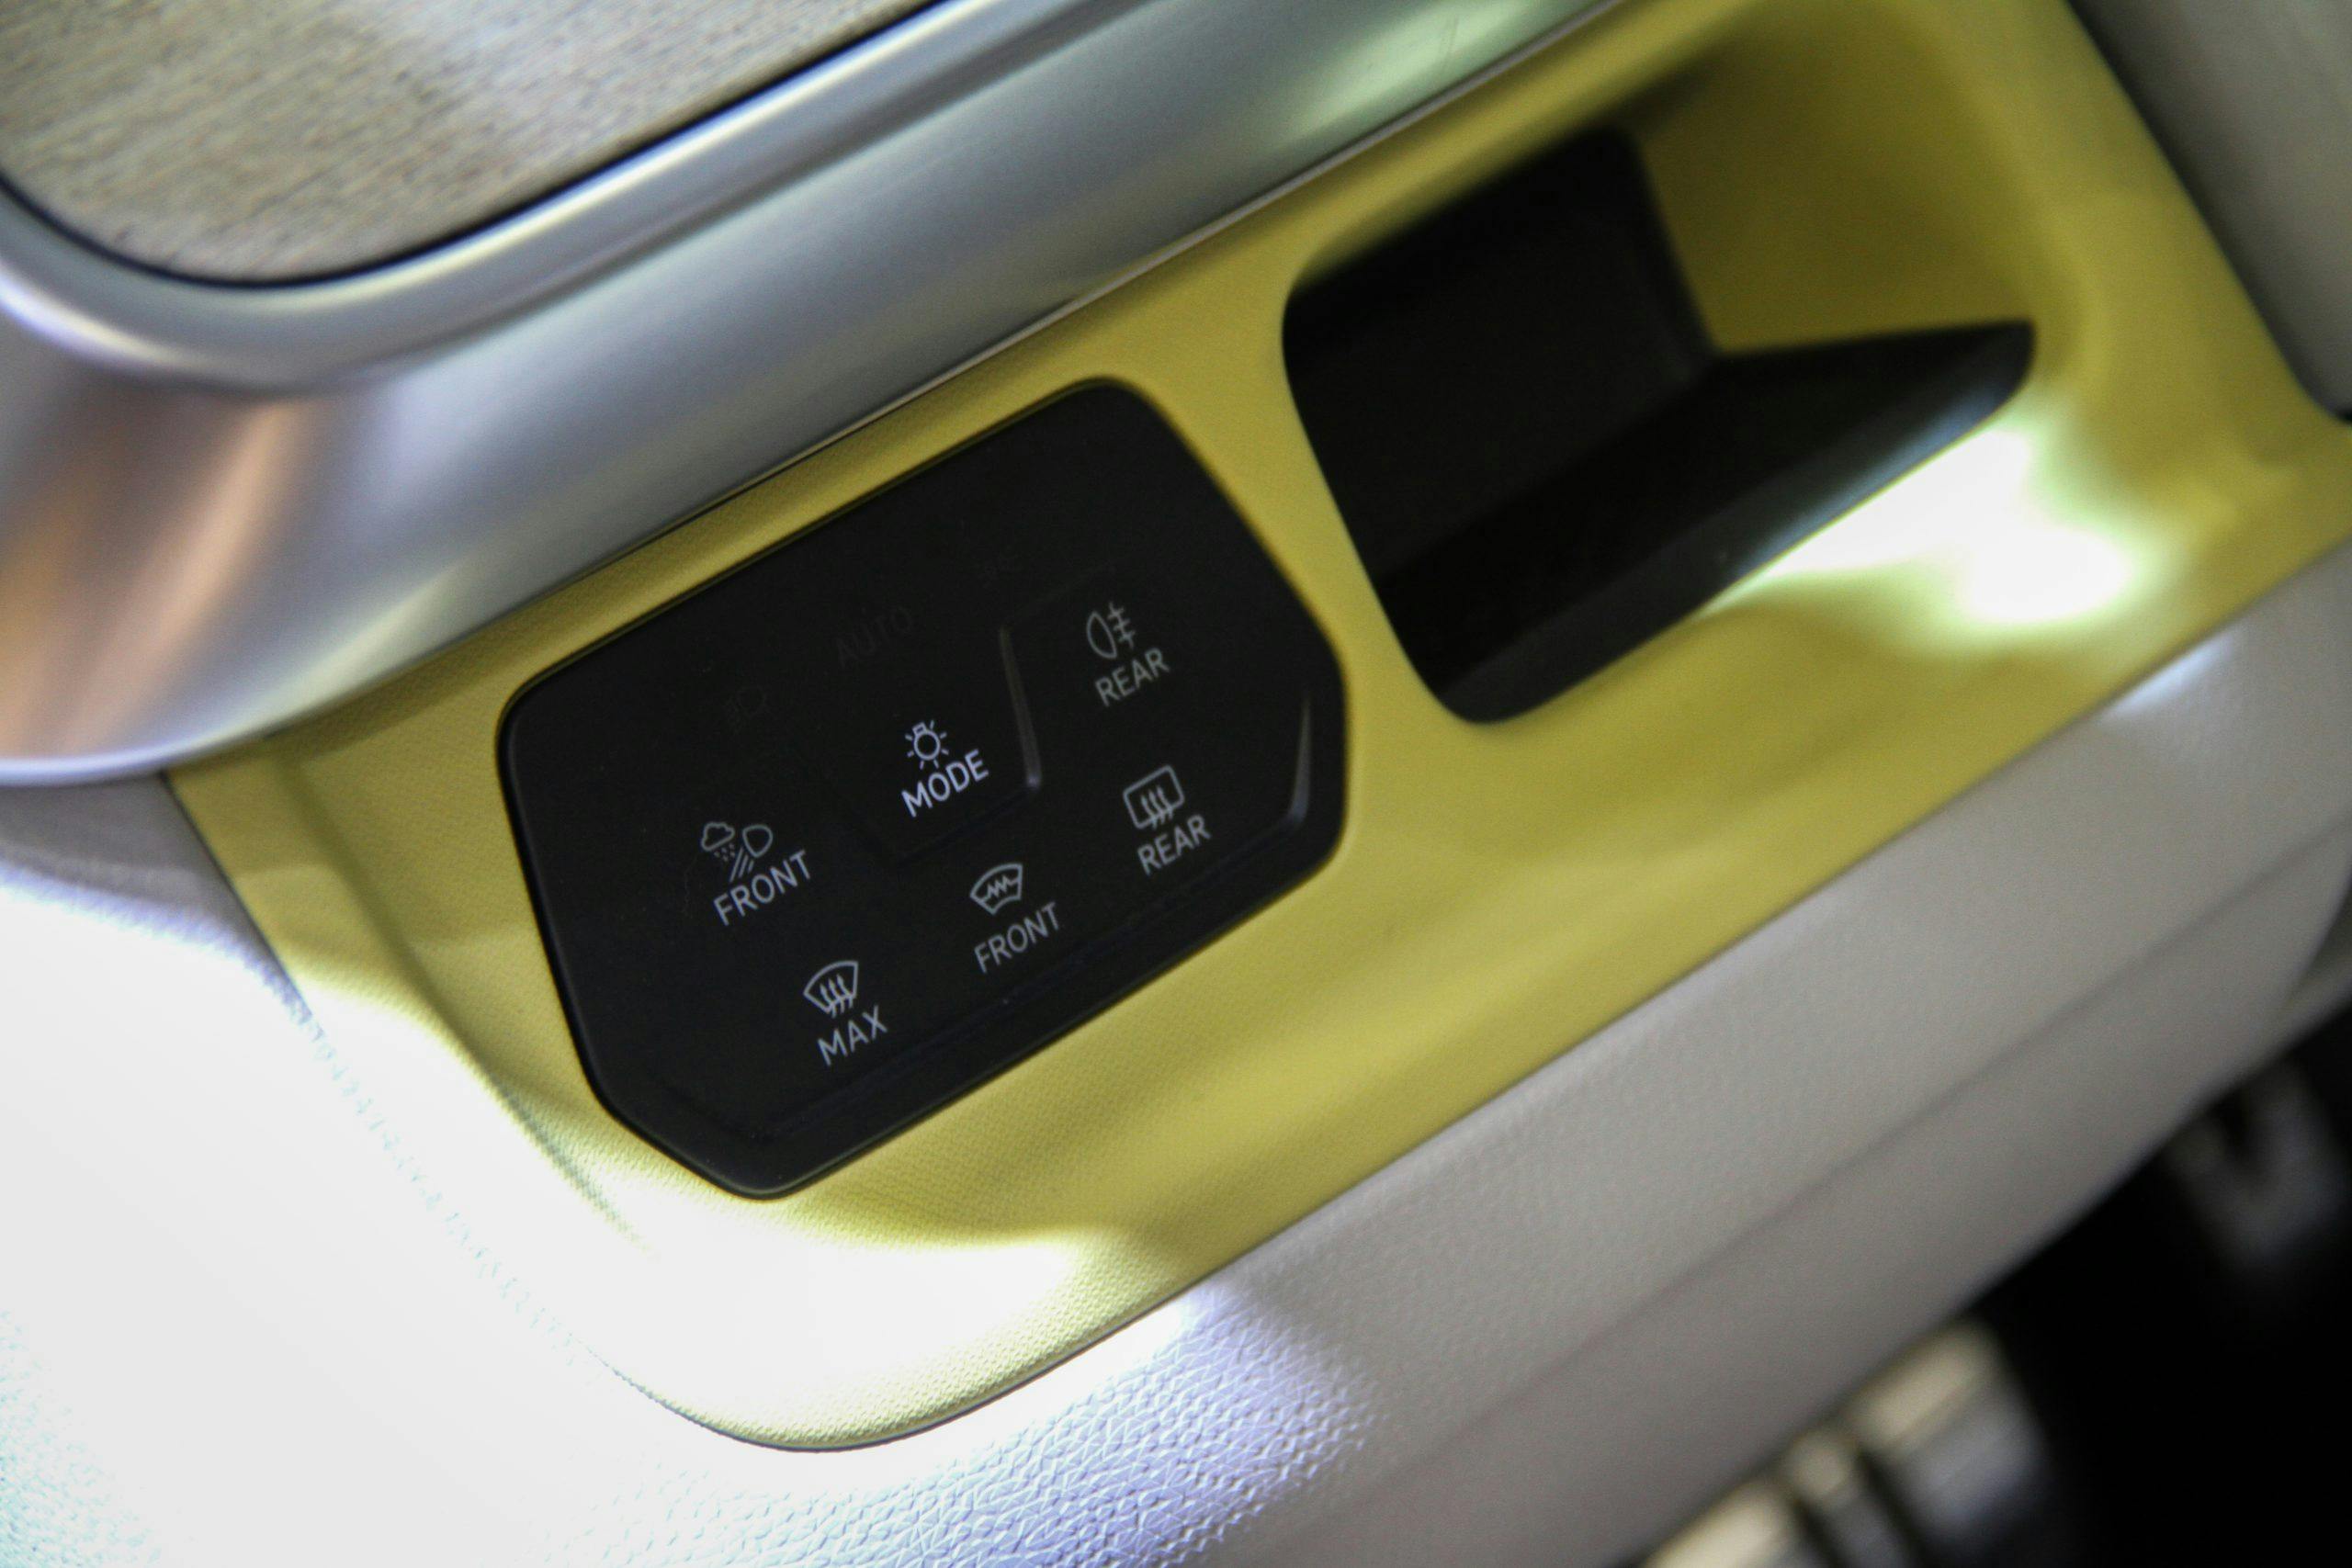 Euro-Spec ID. Buzz Prototype interior controls